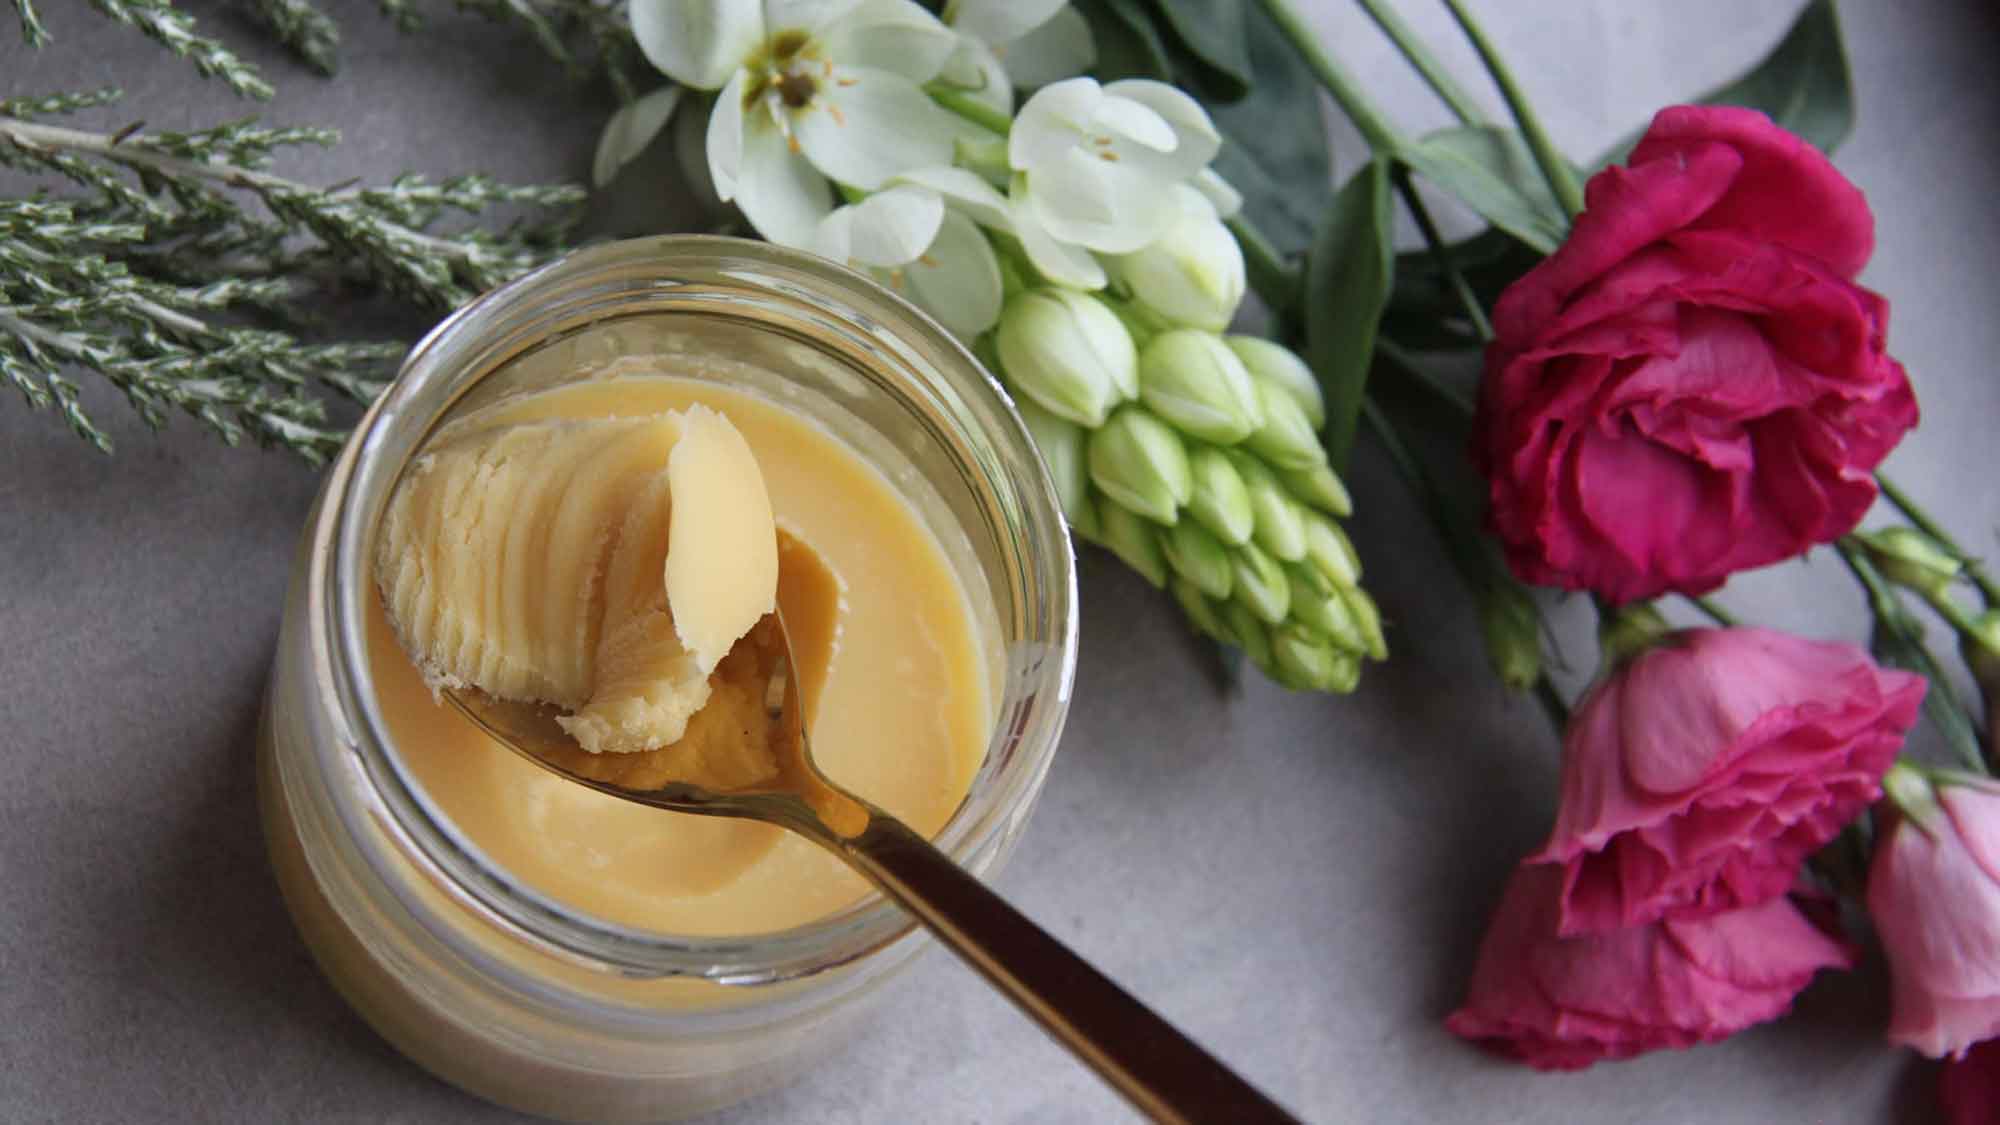 Öko Test: vegane Butter im Test – kein Produkt empfehlenswert